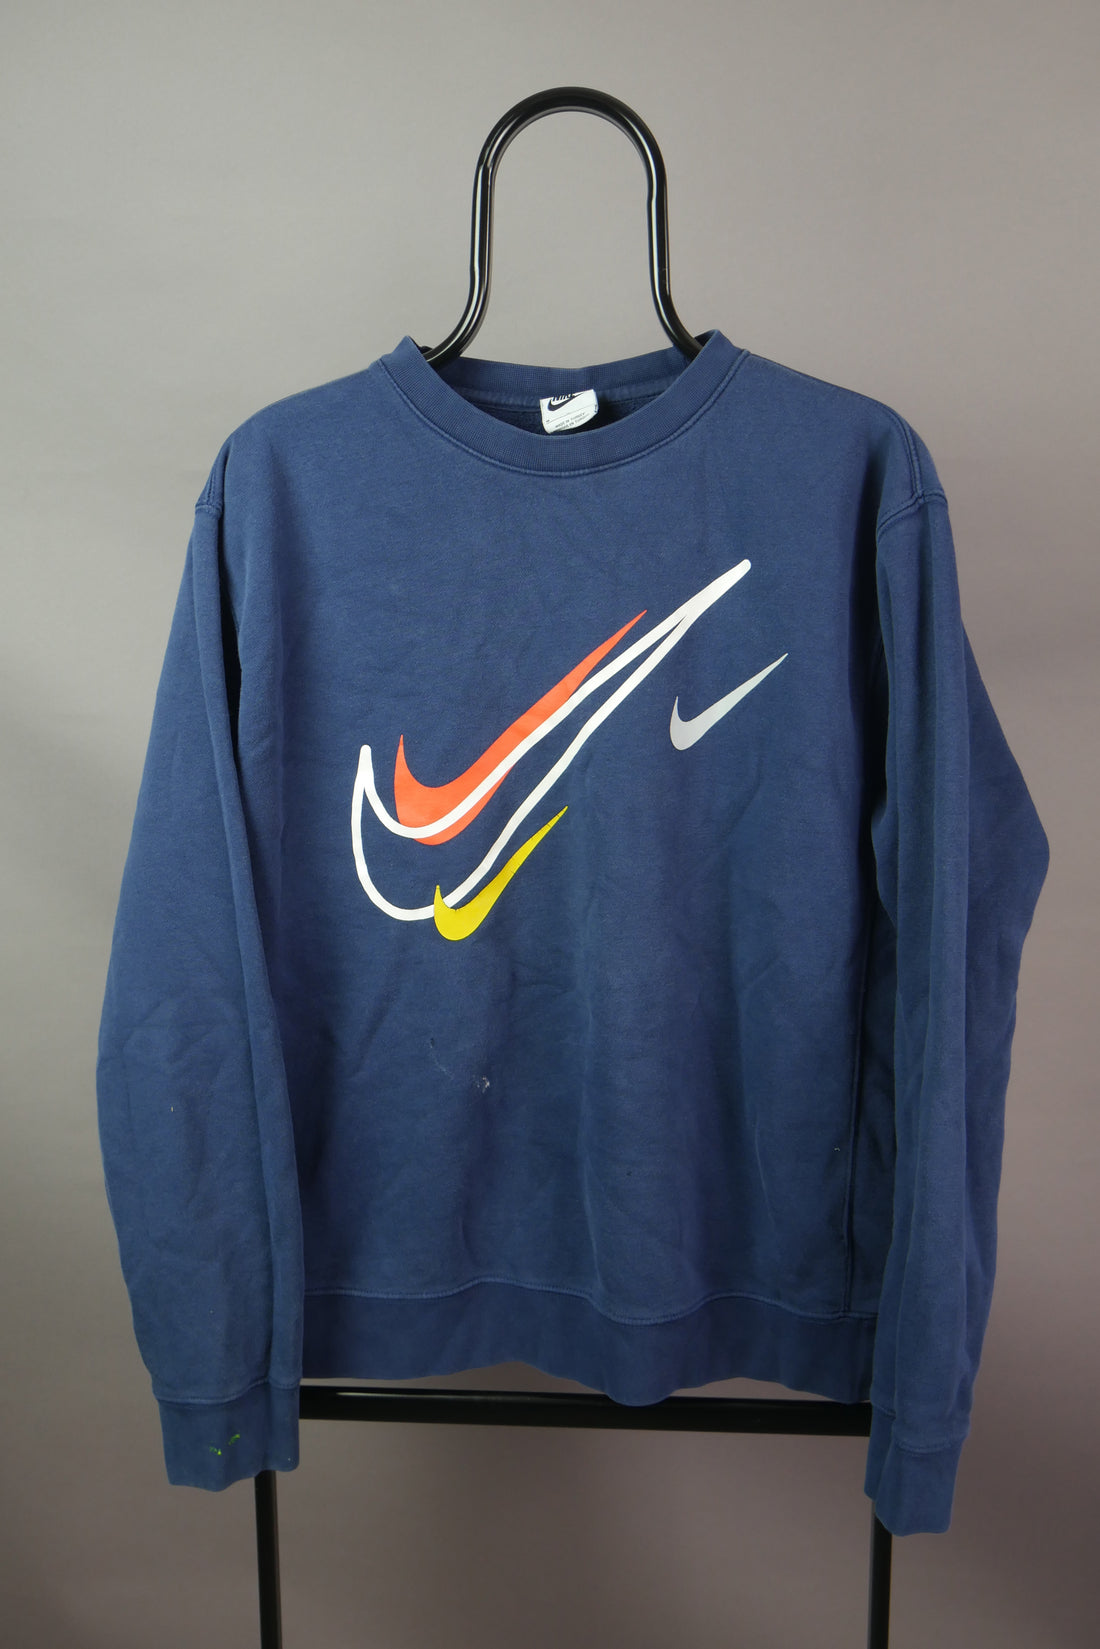 The Nike Graphic Sweatshirt (M)